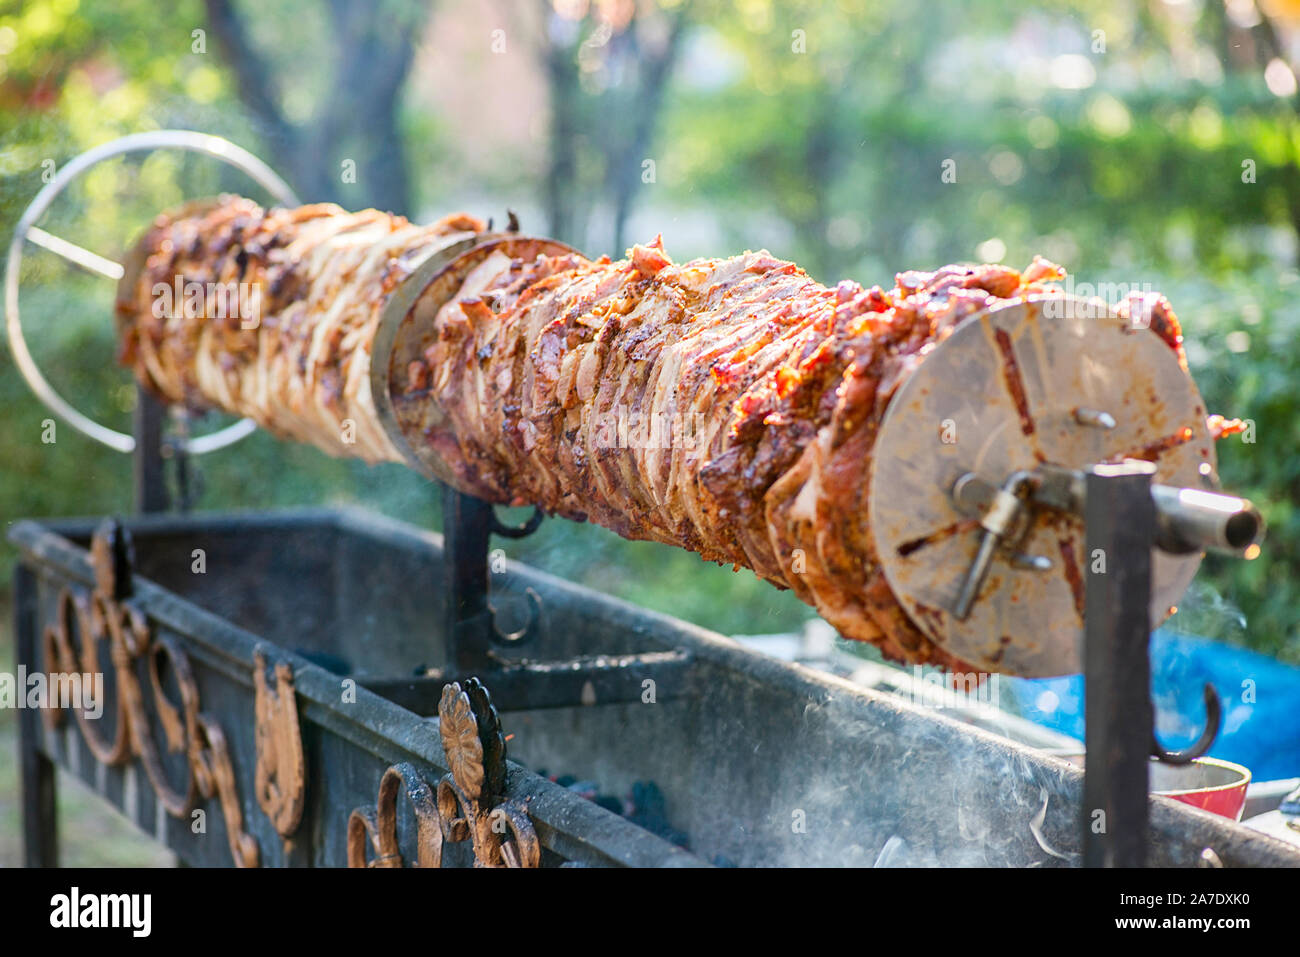 Eine rotierende Spieß Braten von Fleisch über glühende Kohlen. Grill  Fleisch, gebratenes Schwein am Spieß Stockfotografie - Alamy